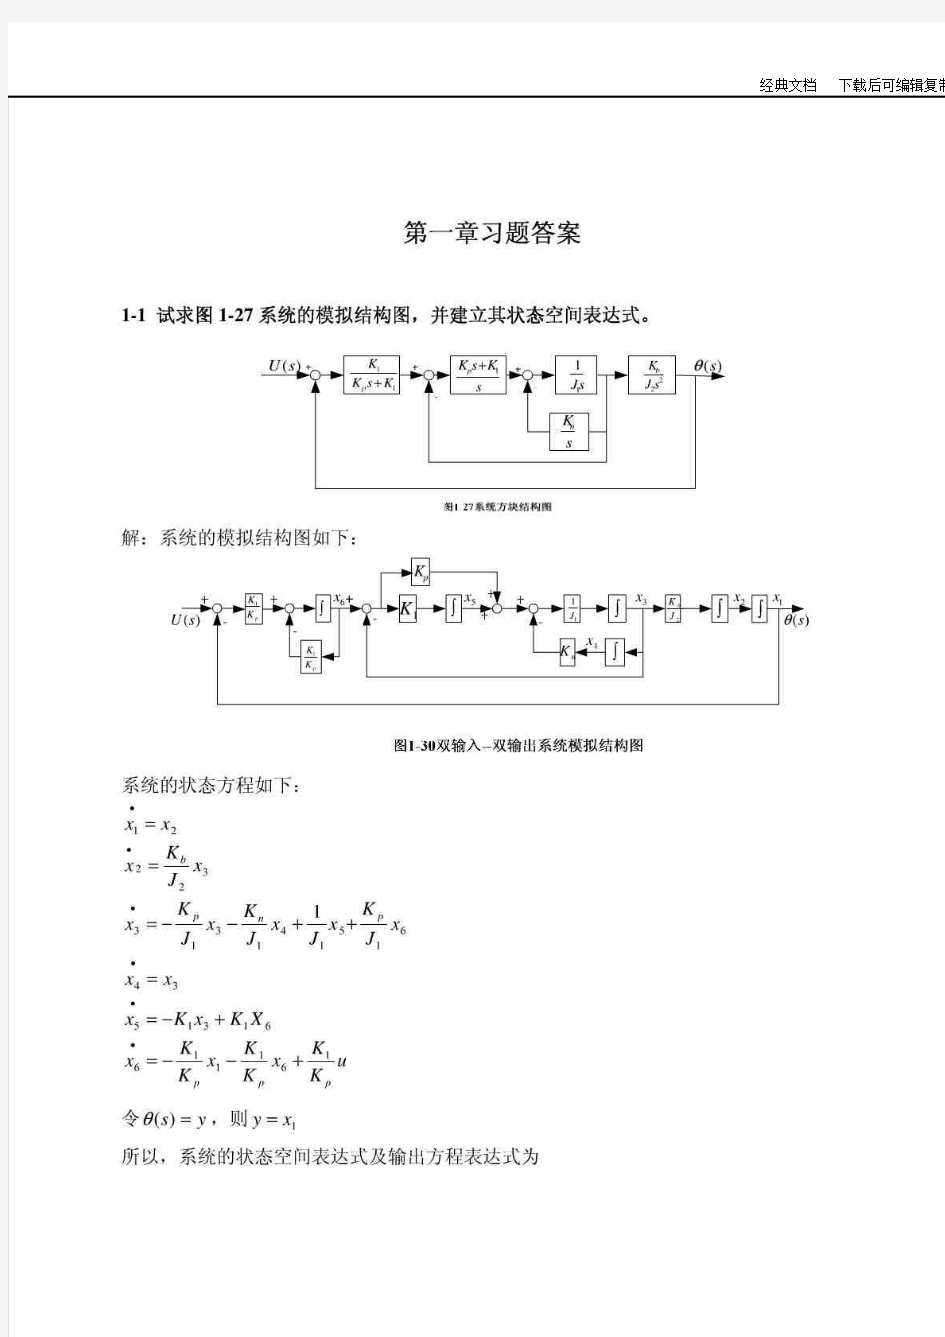 《现代控制理论》刘豹著(第3版)课后习题答案(最完整版)